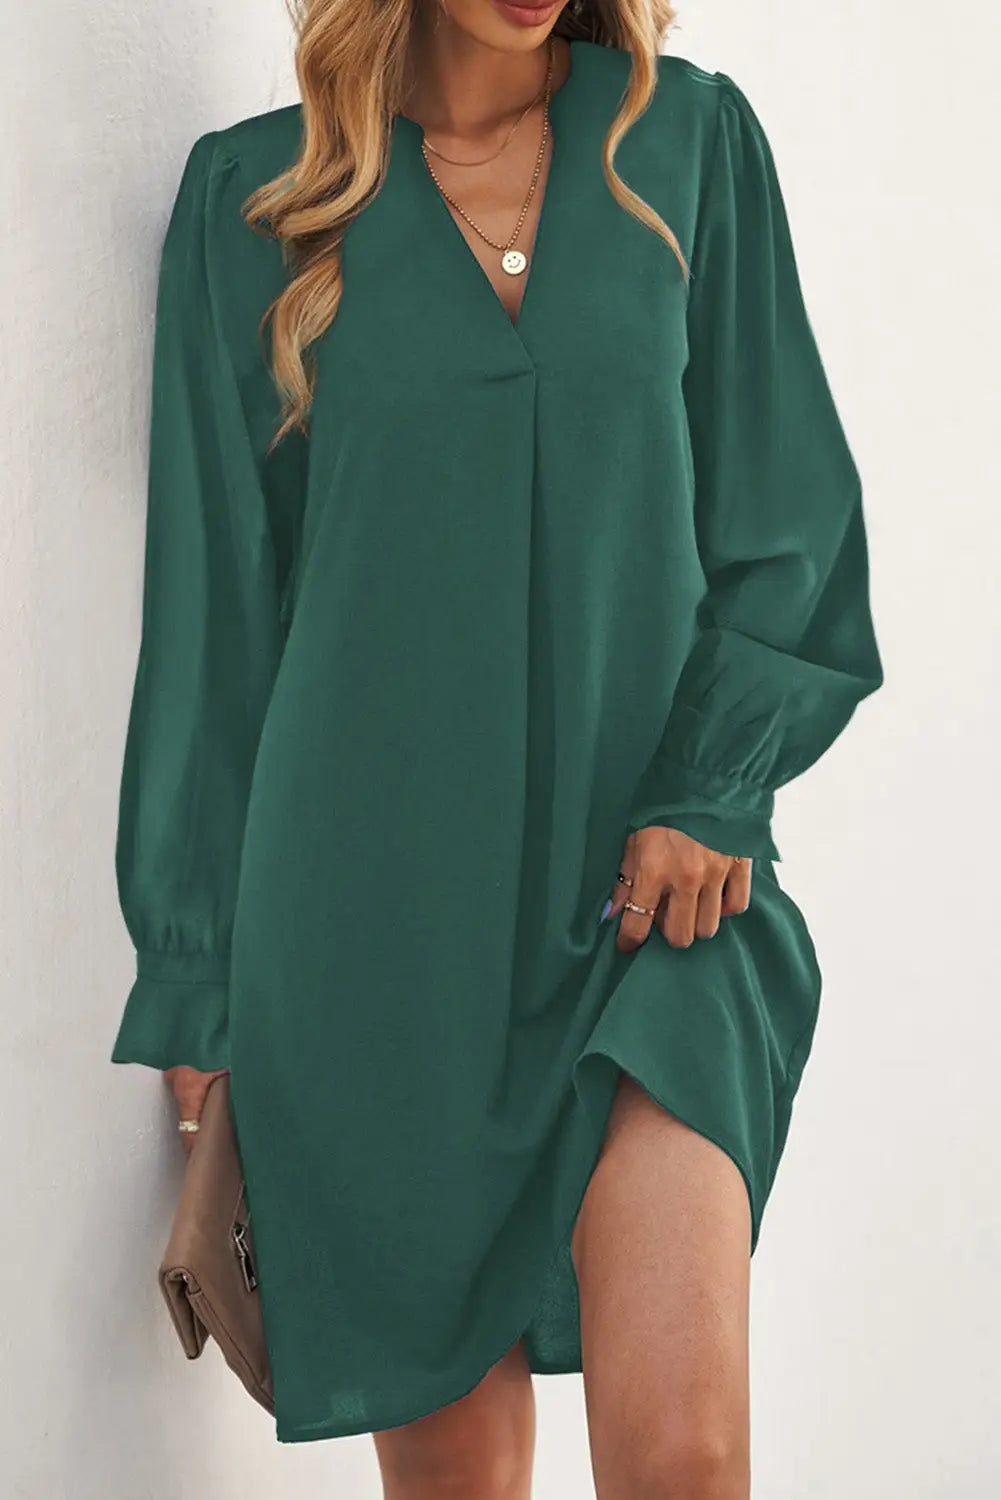 Black split v neck ruffled sleeves shirt dress - green-2 / s / 100% polyester - mini dresses